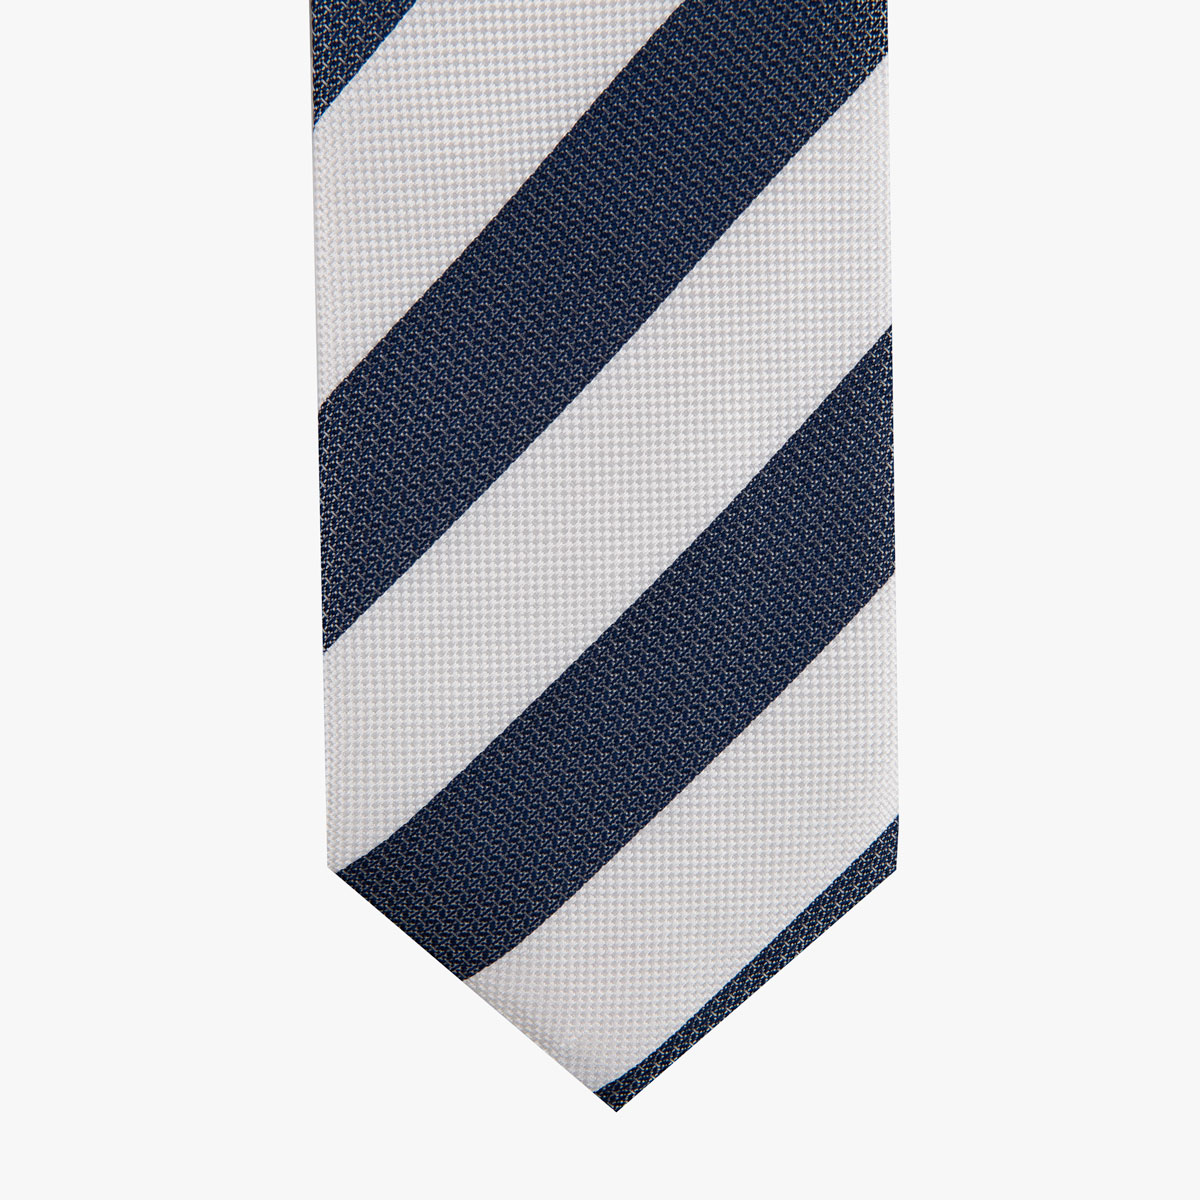 Krawatte glatt mit breiten Streifen in dunkelblau weiß